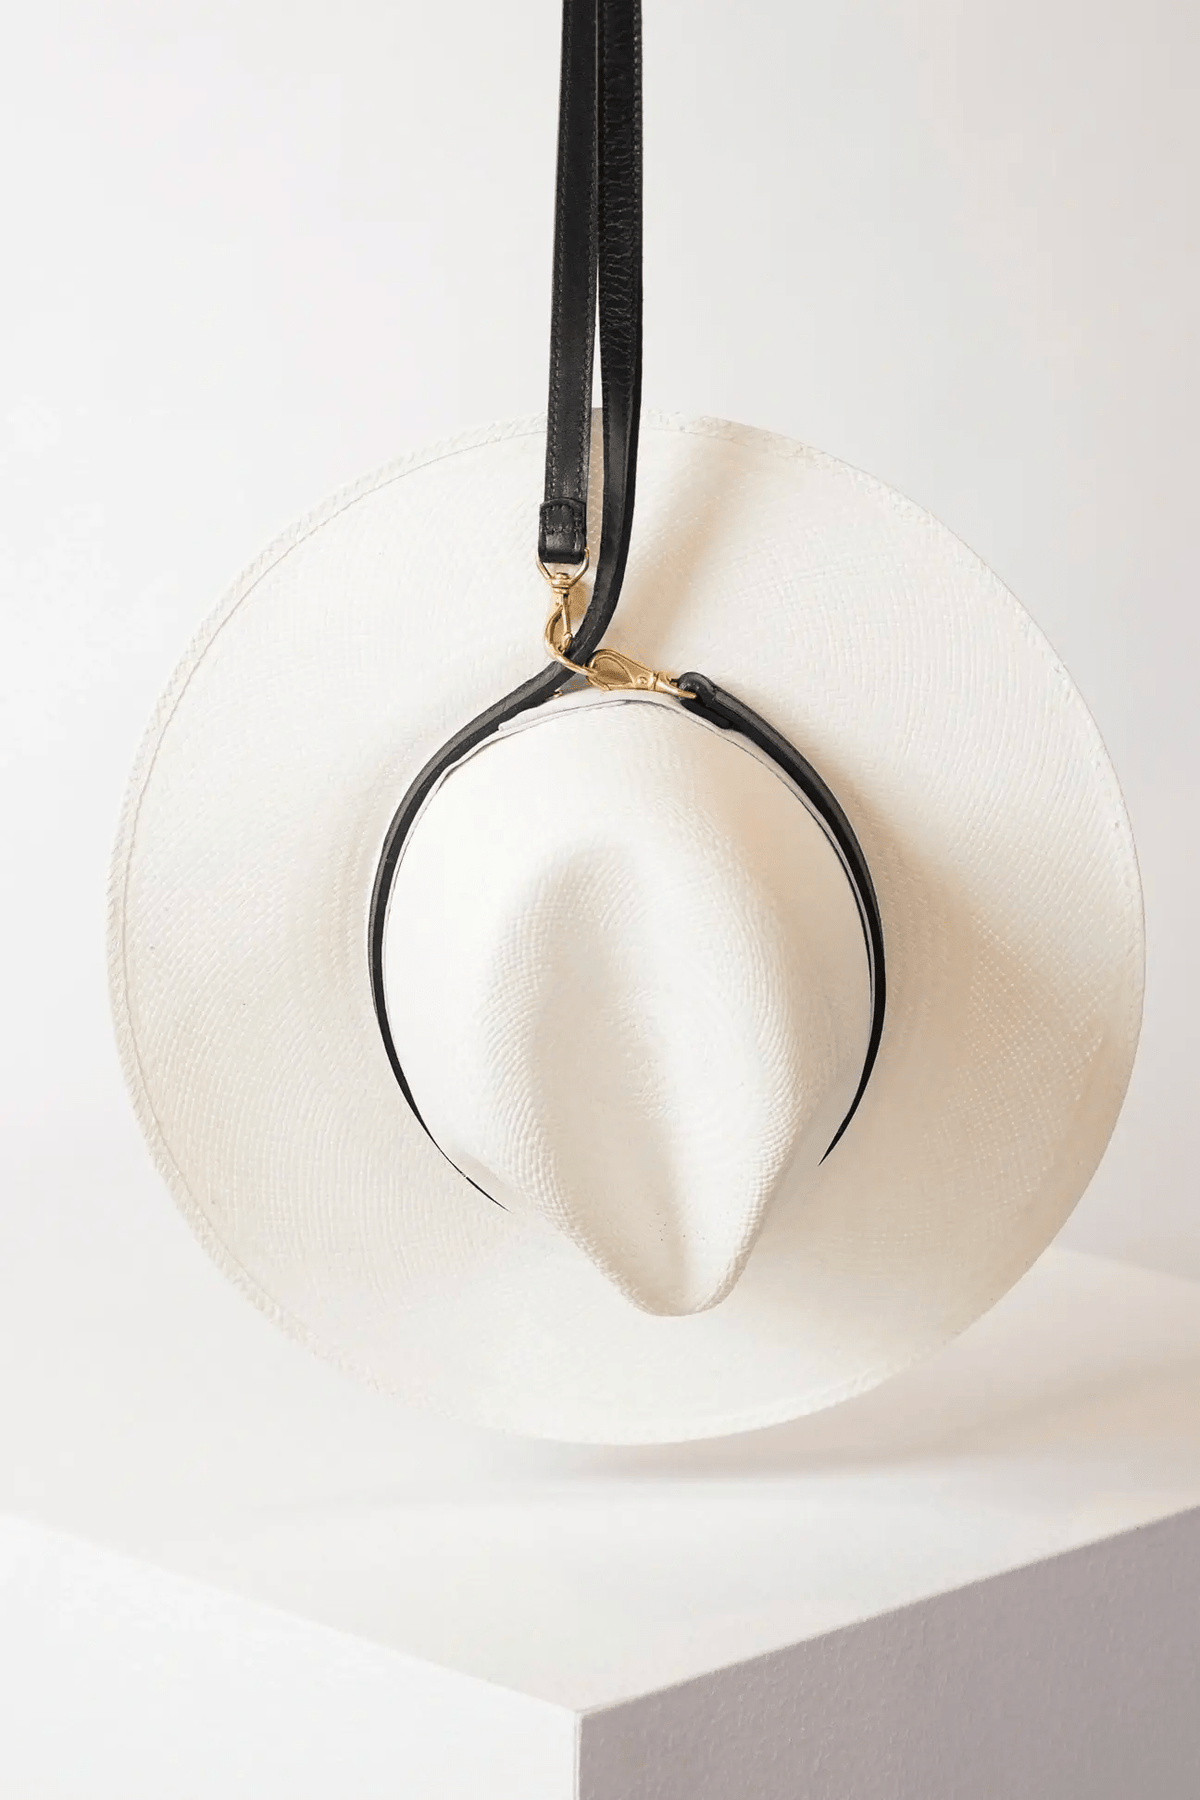 Janessa Leoné Hat carrier